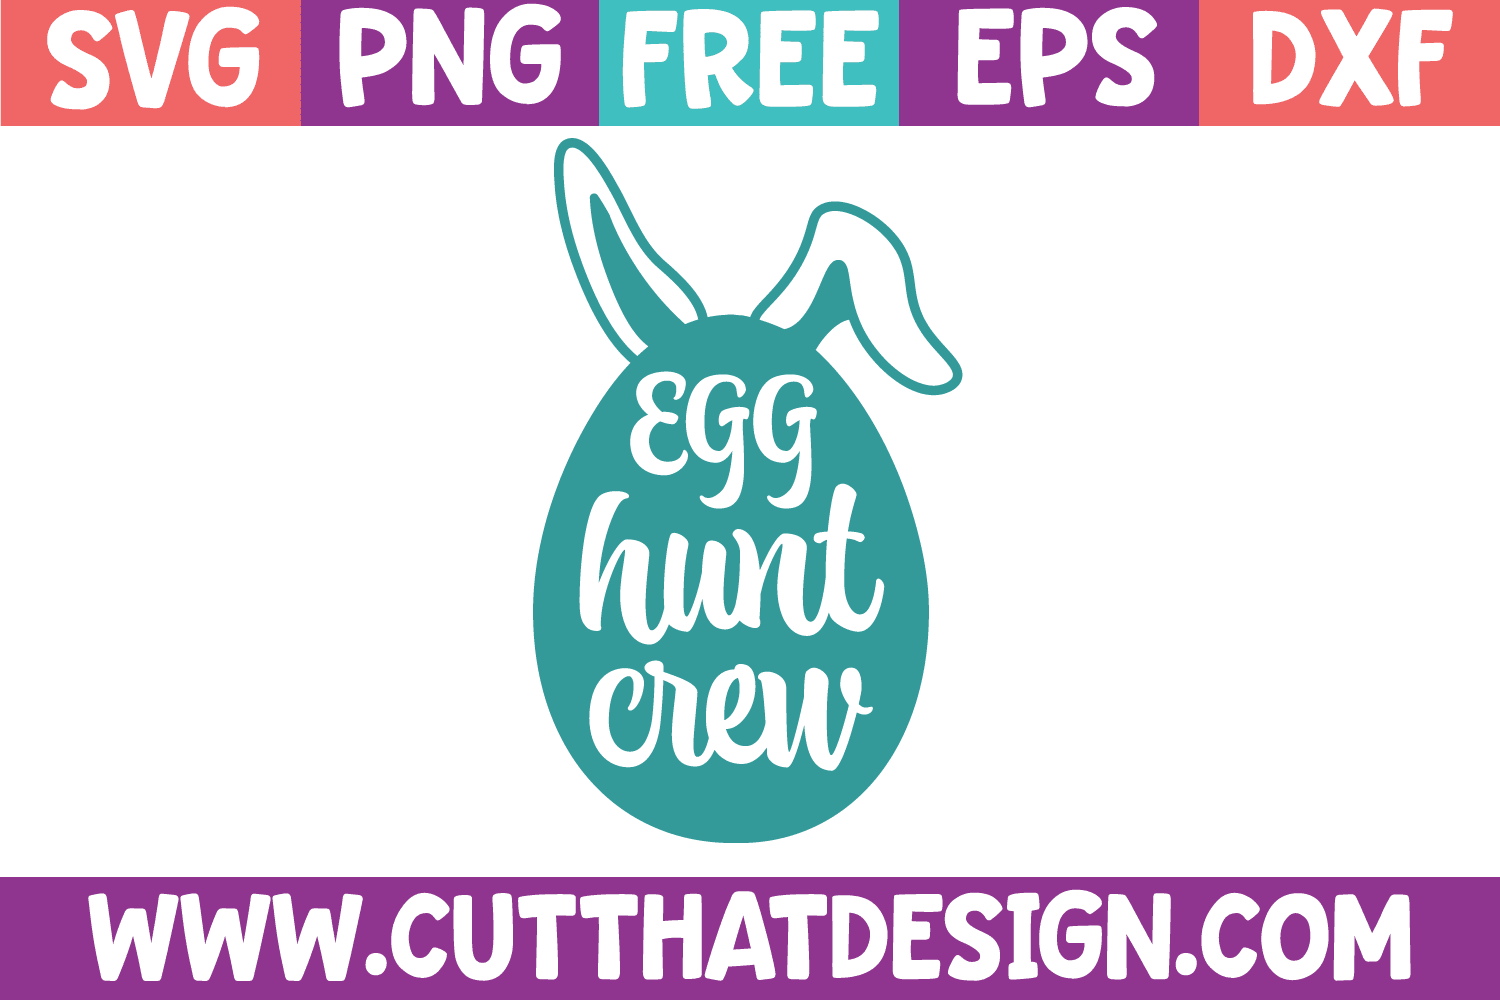 Egg Hunt Crew SVG